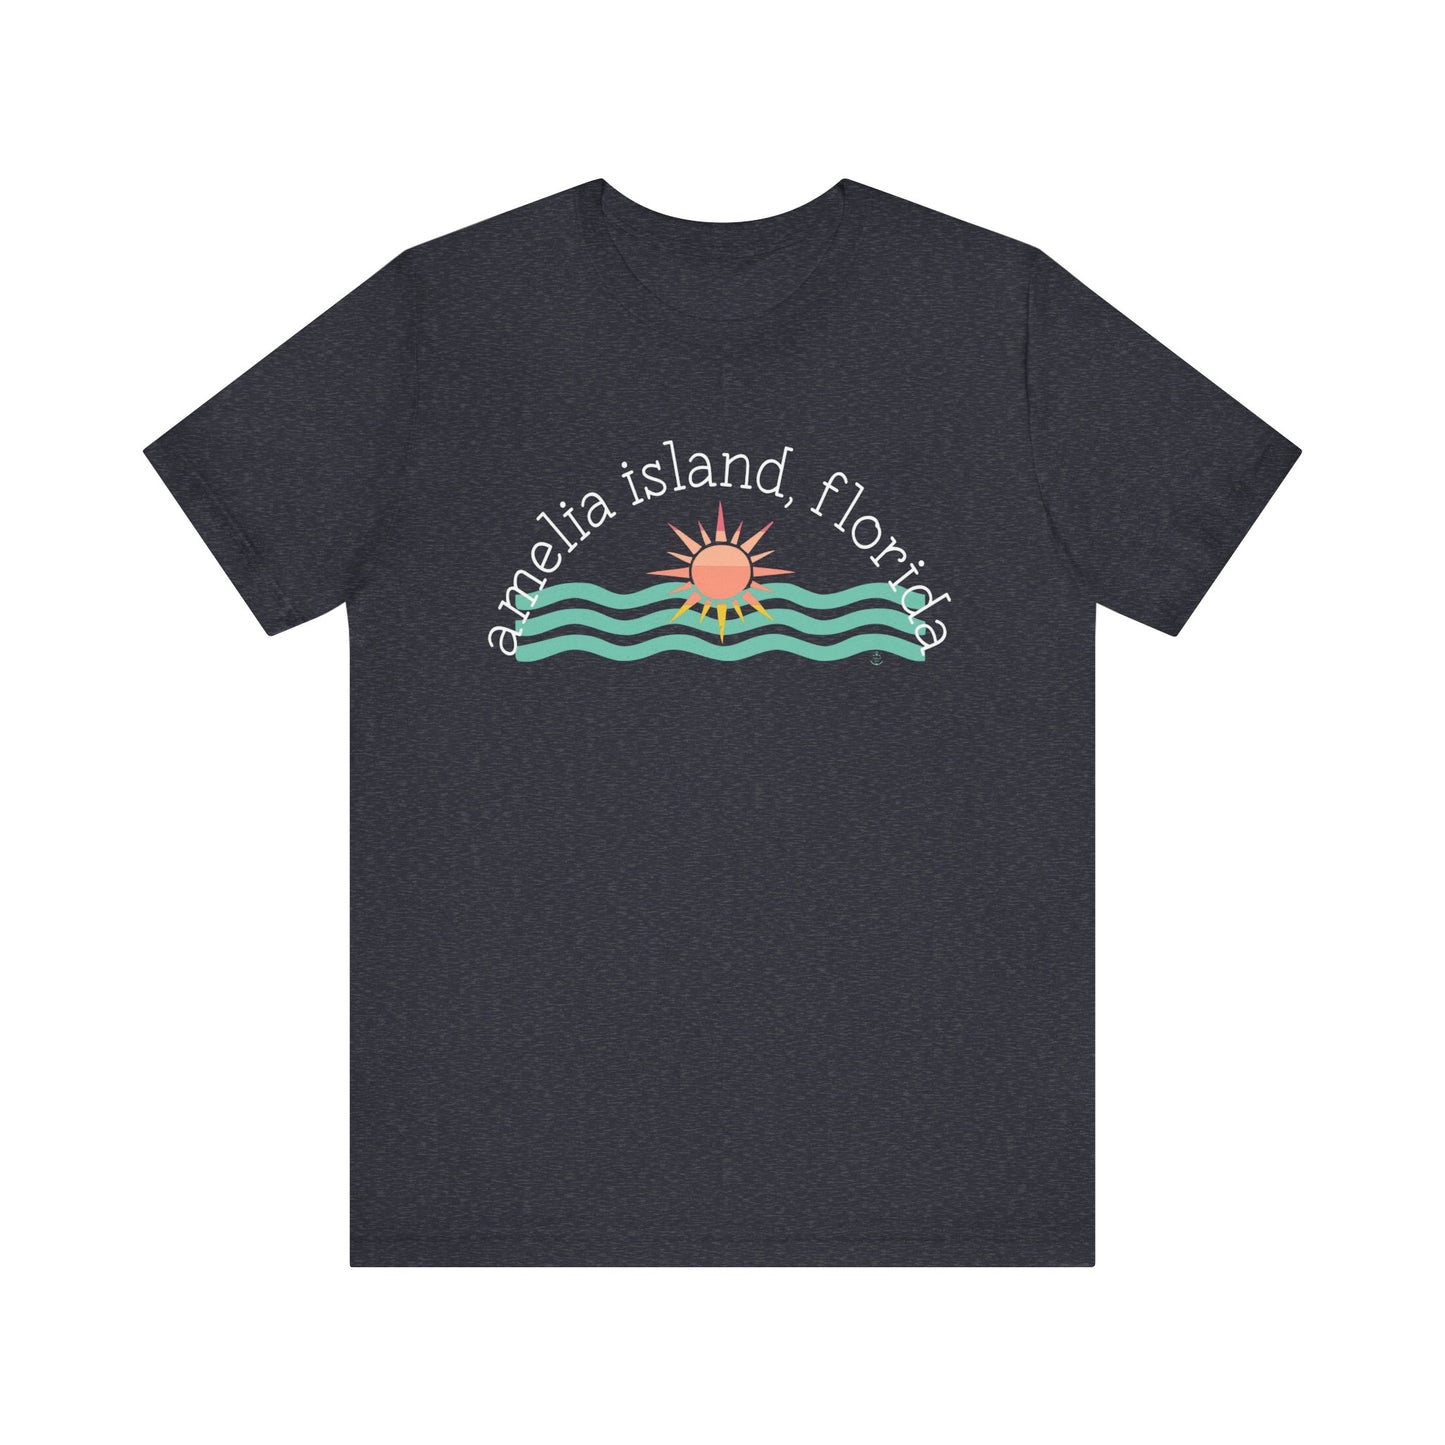 Amelia Island, Florida Tshirt- Heather Navy, beach girl tshirt, Island Girl Tshirt